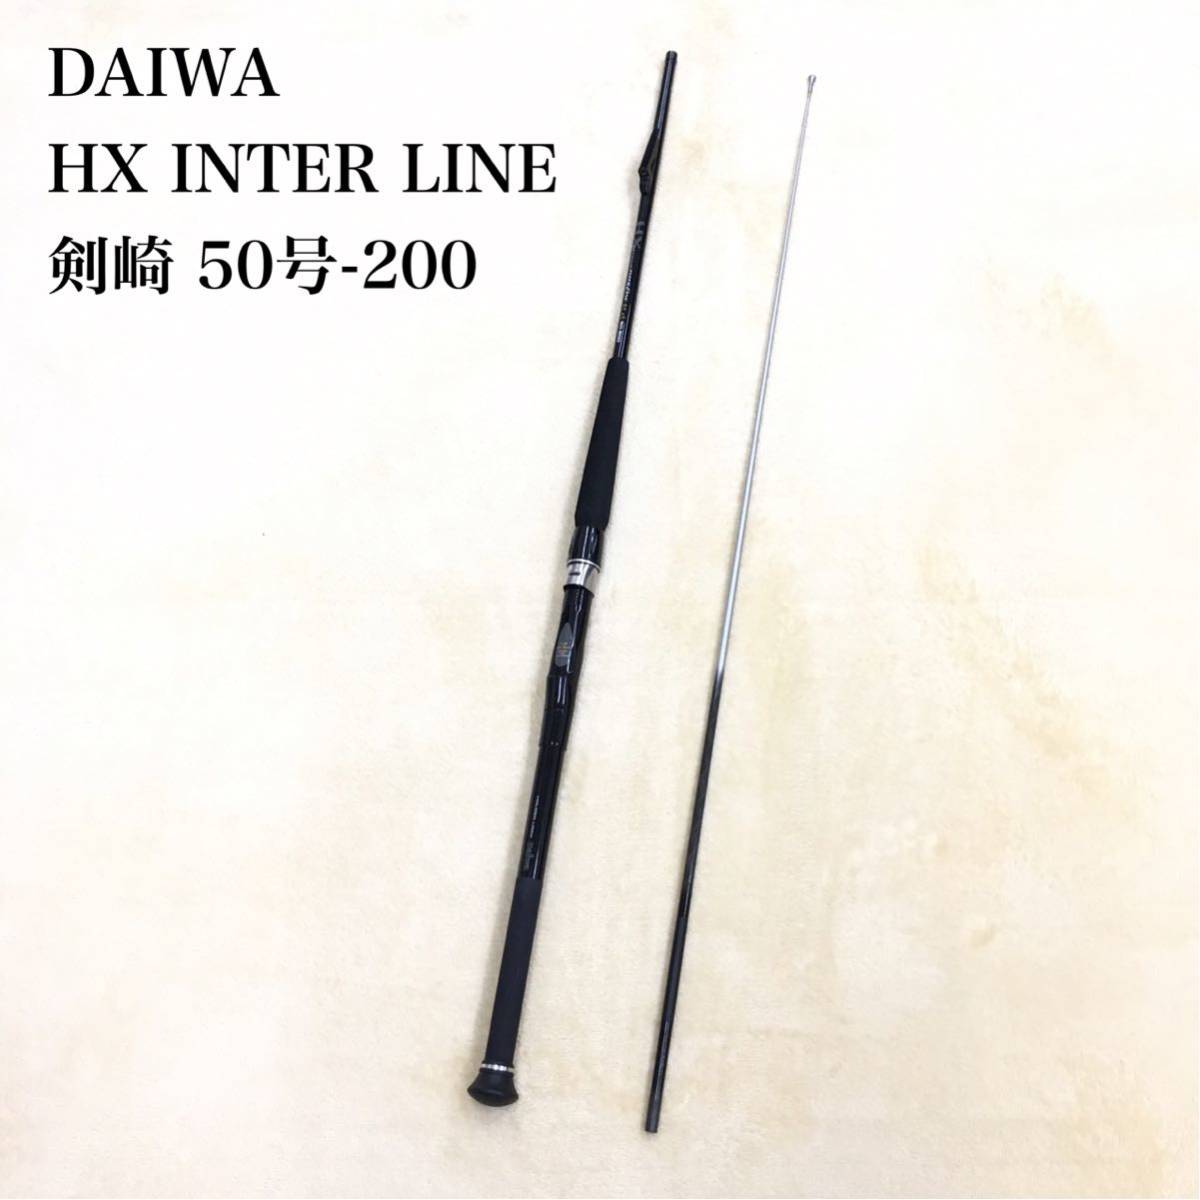 DAIWA HX INTER LINE 剣崎 50号-200 ダイワ ハイパフォーマンス HX インターライン 2ピース 船竿 ロッド 釣具